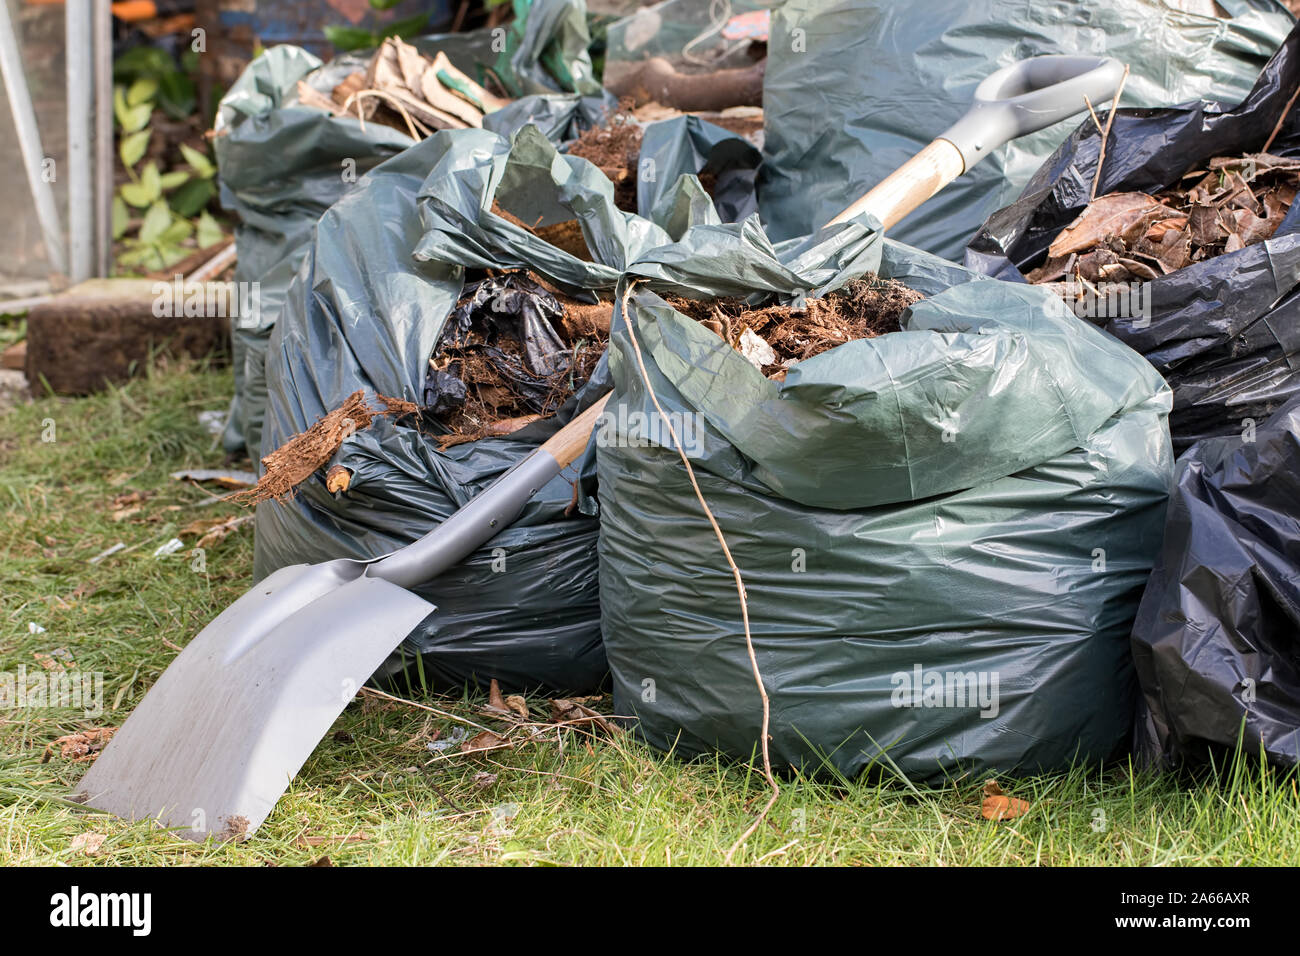 Les déchets de jardin. Brown Feuilles et déchets de jardinage recueillis auprès d'un ménage. Chat plus de sacs de déchets de jardin sur une pelouse. Banque D'Images